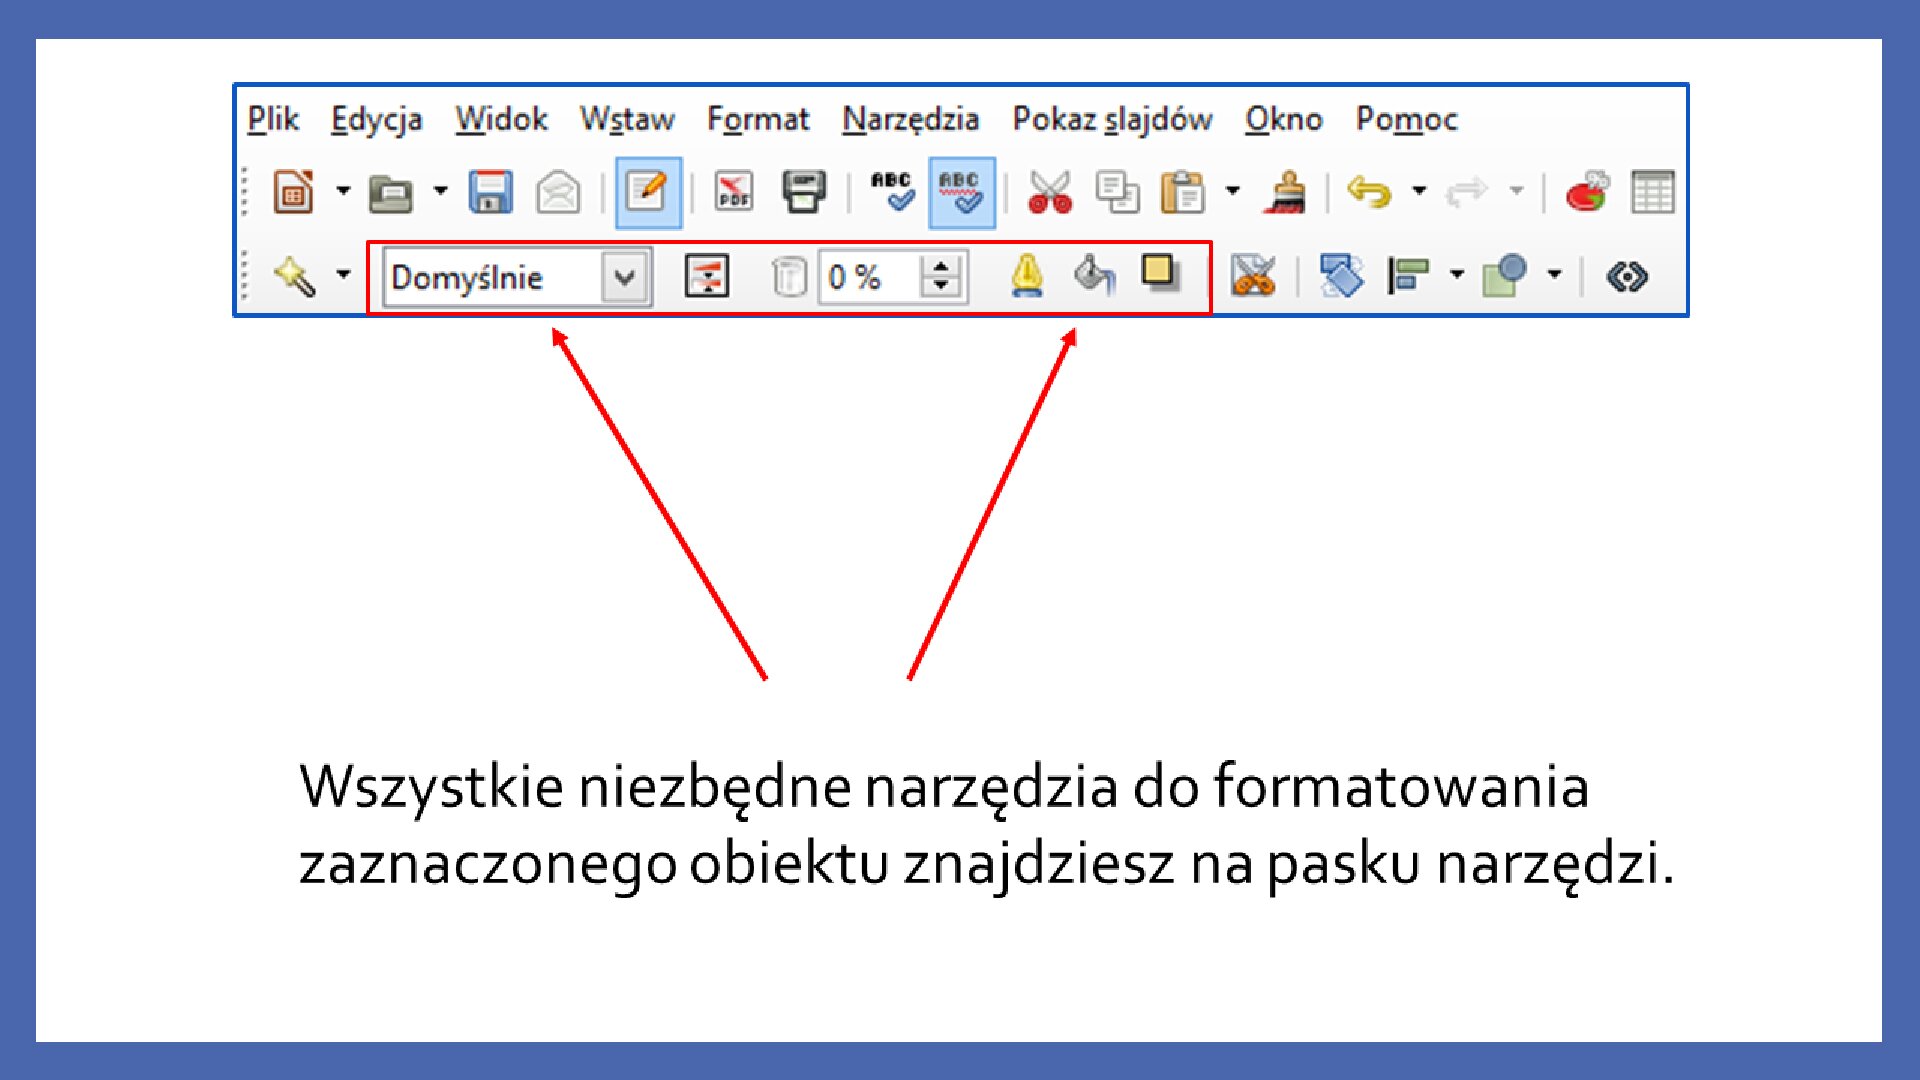 Slajd 2 galerii zrzutów slajdów: Modyfikacja obiektów w programie LibreOffice Impress